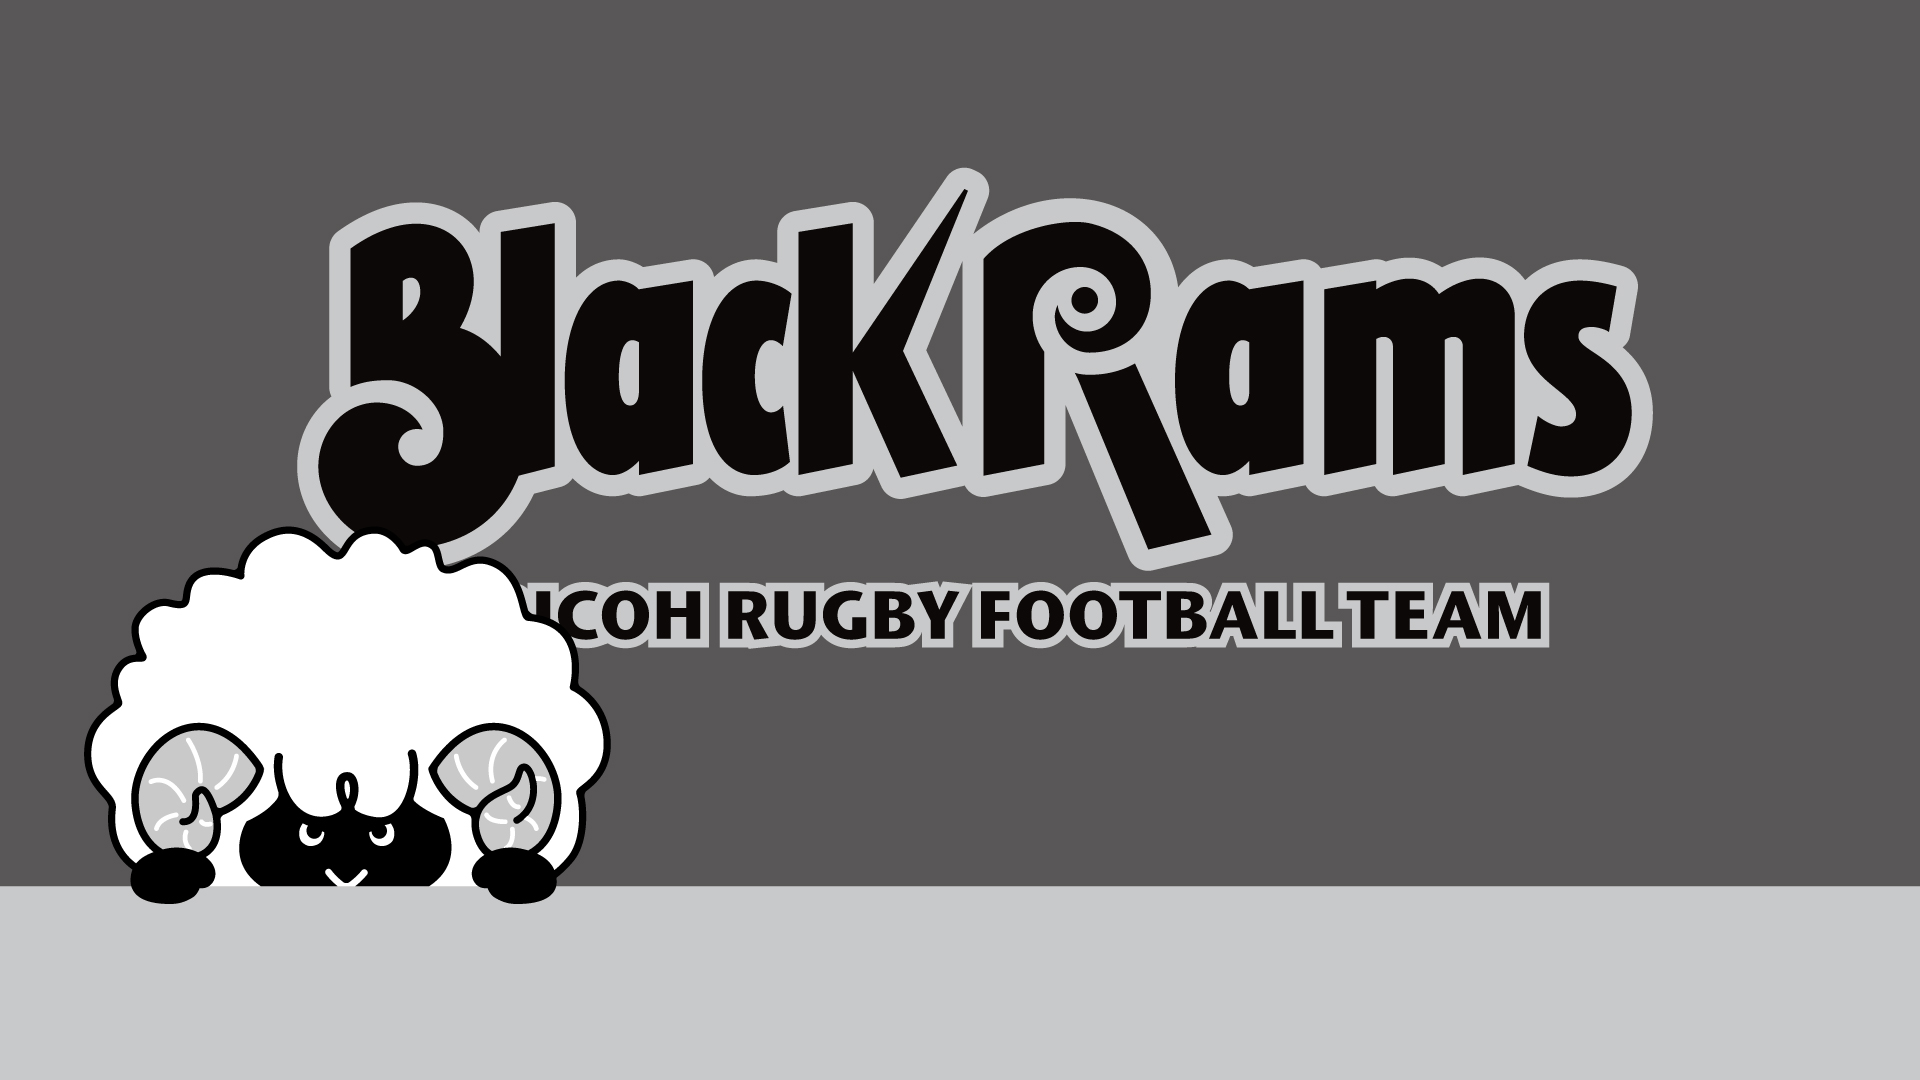 オンライン会議などで使える Blackrams壁紙 第二弾 21シーズン Ricoh Blackrams リコー ラグビー部